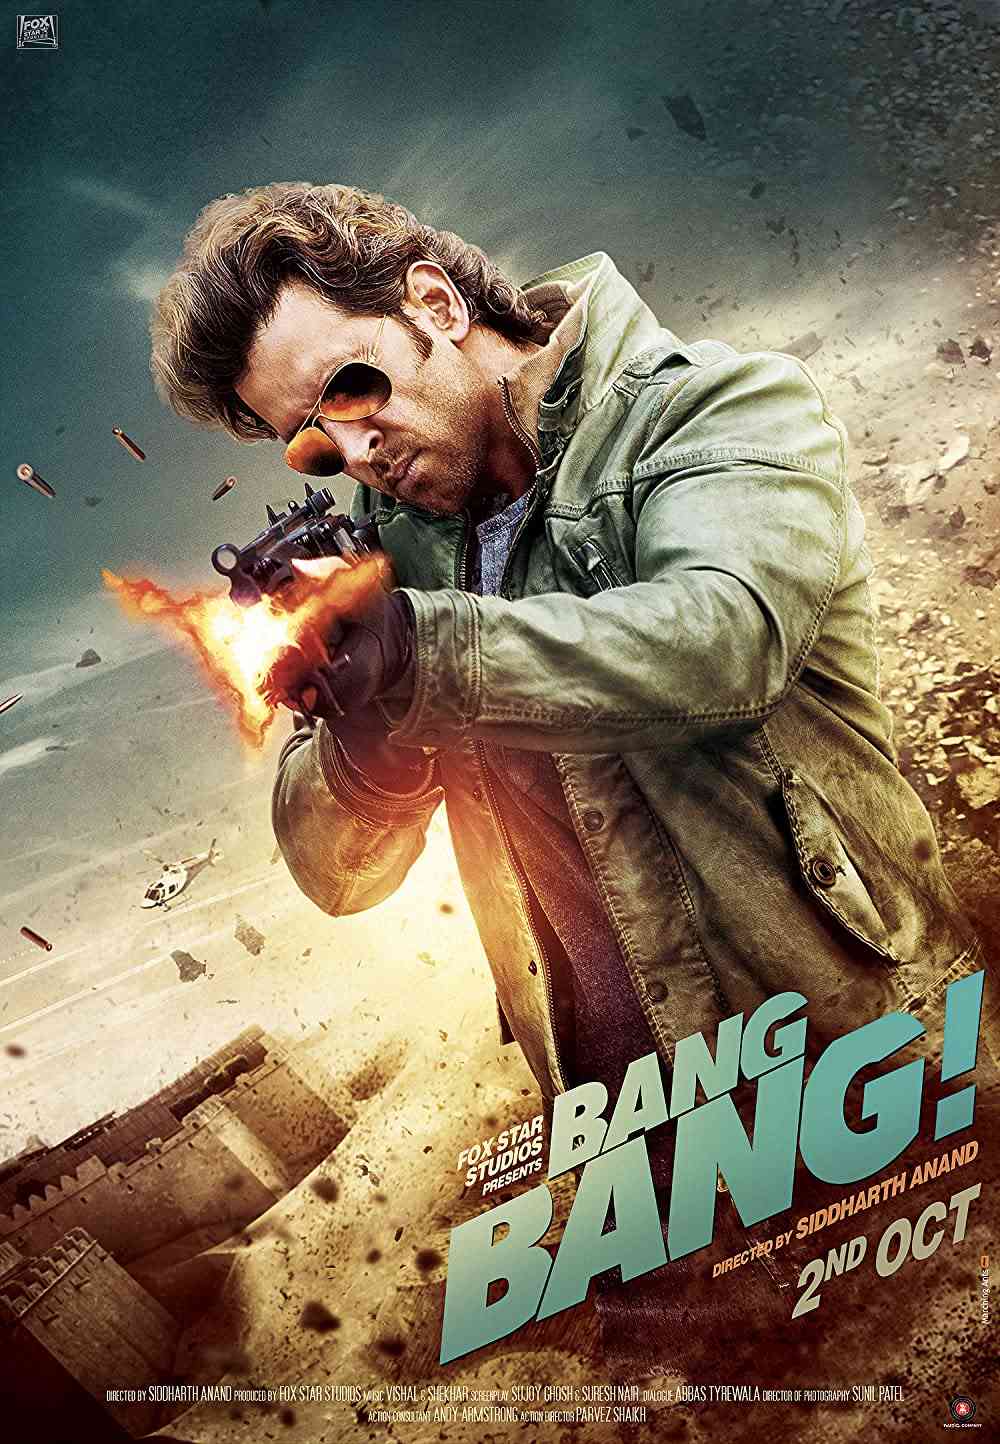 FULL MOVIE: Bang Bang (2014) [Action]